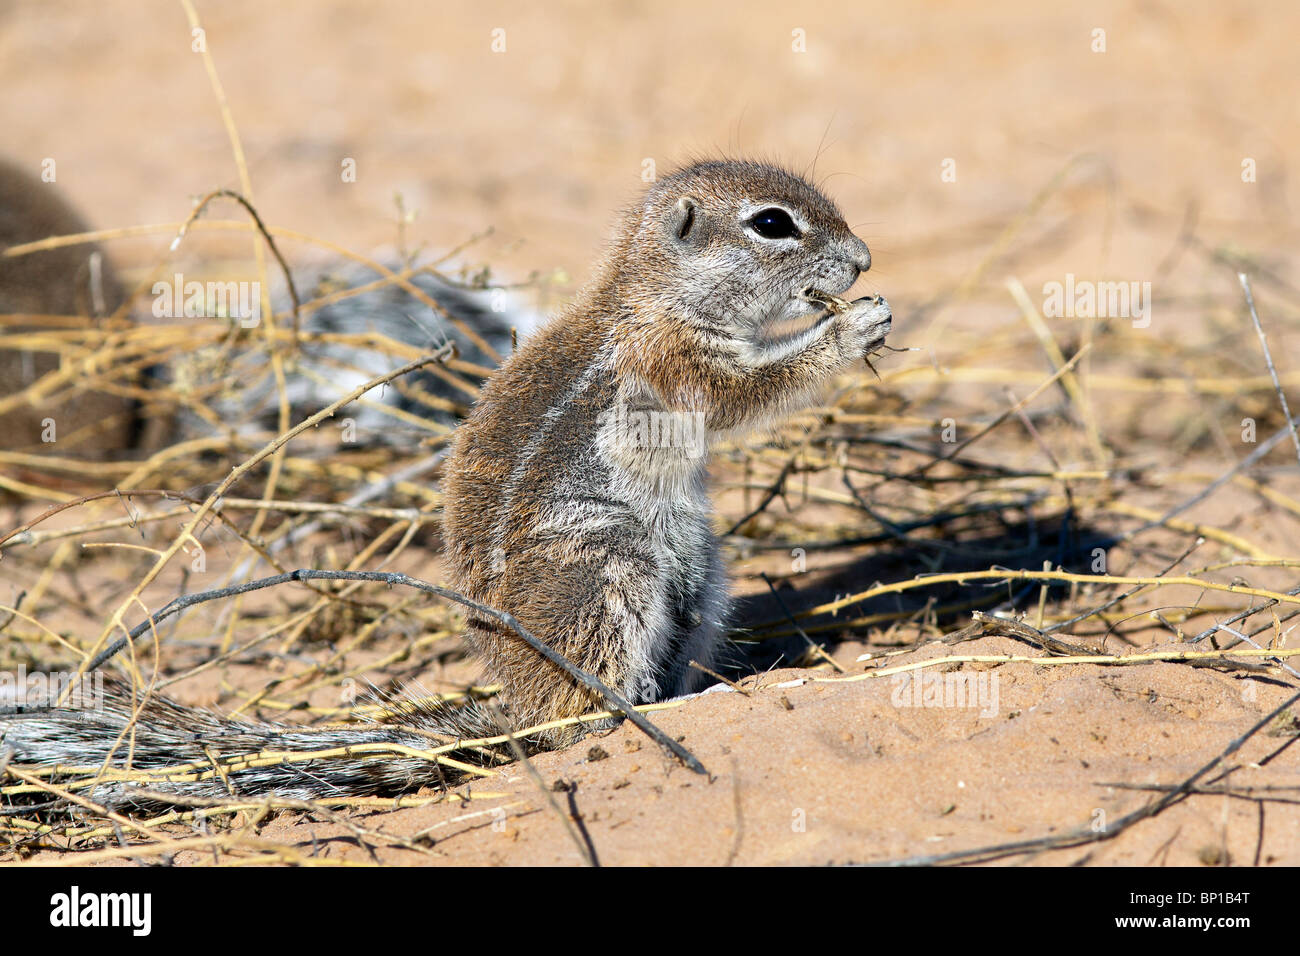 Kap-Erdhörnchen Xerus Inauris treten hauptsächlich in den trockenen, Halbwüsten Regionen des südlichen Afrika, vor allem in der Kalahari. Stockfoto